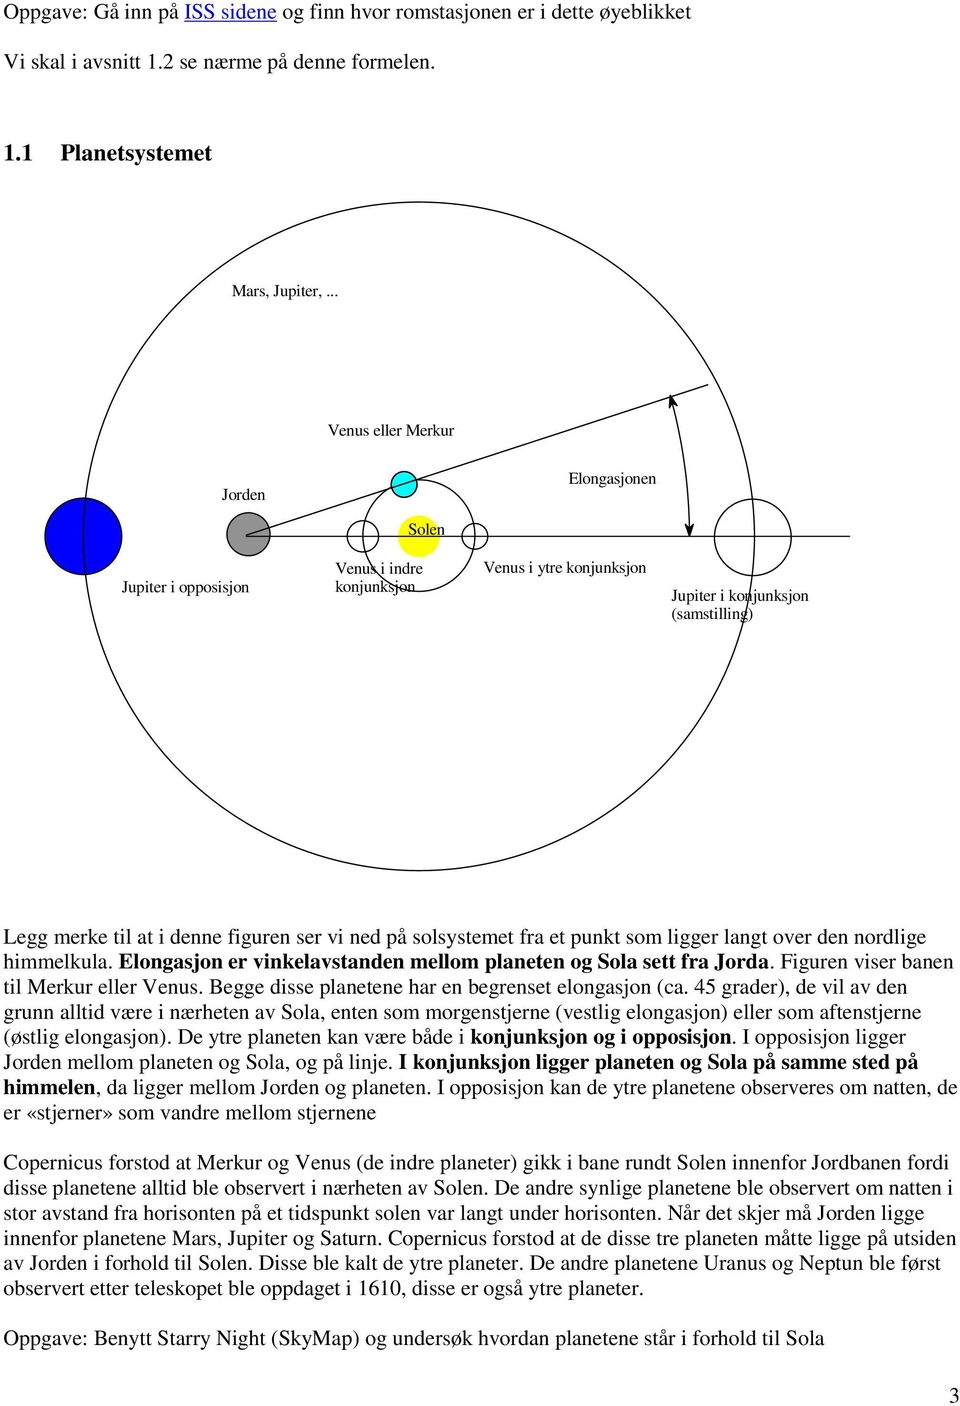 ned på solsystemet fra et punkt som ligger langt over den nordlige himmelkula. Elongasjon er vinkelavstanden mellom planeten og Sola sett fra Jorda. Figuren viser banen til Merkur eller Venus.